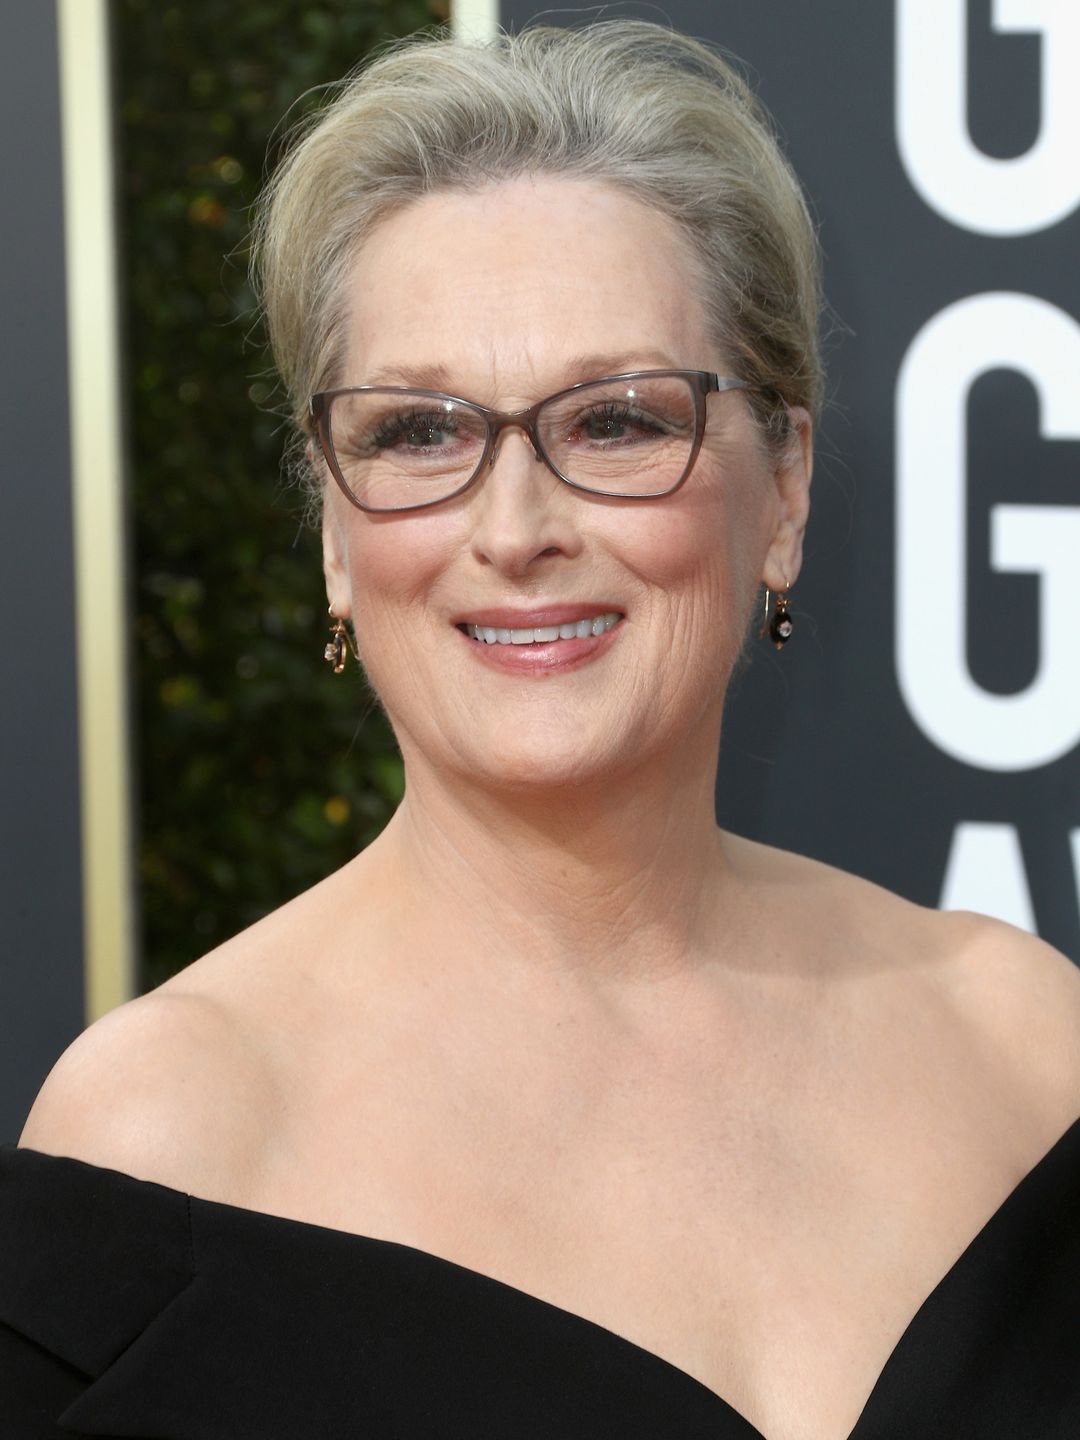 Meryl Streep early career